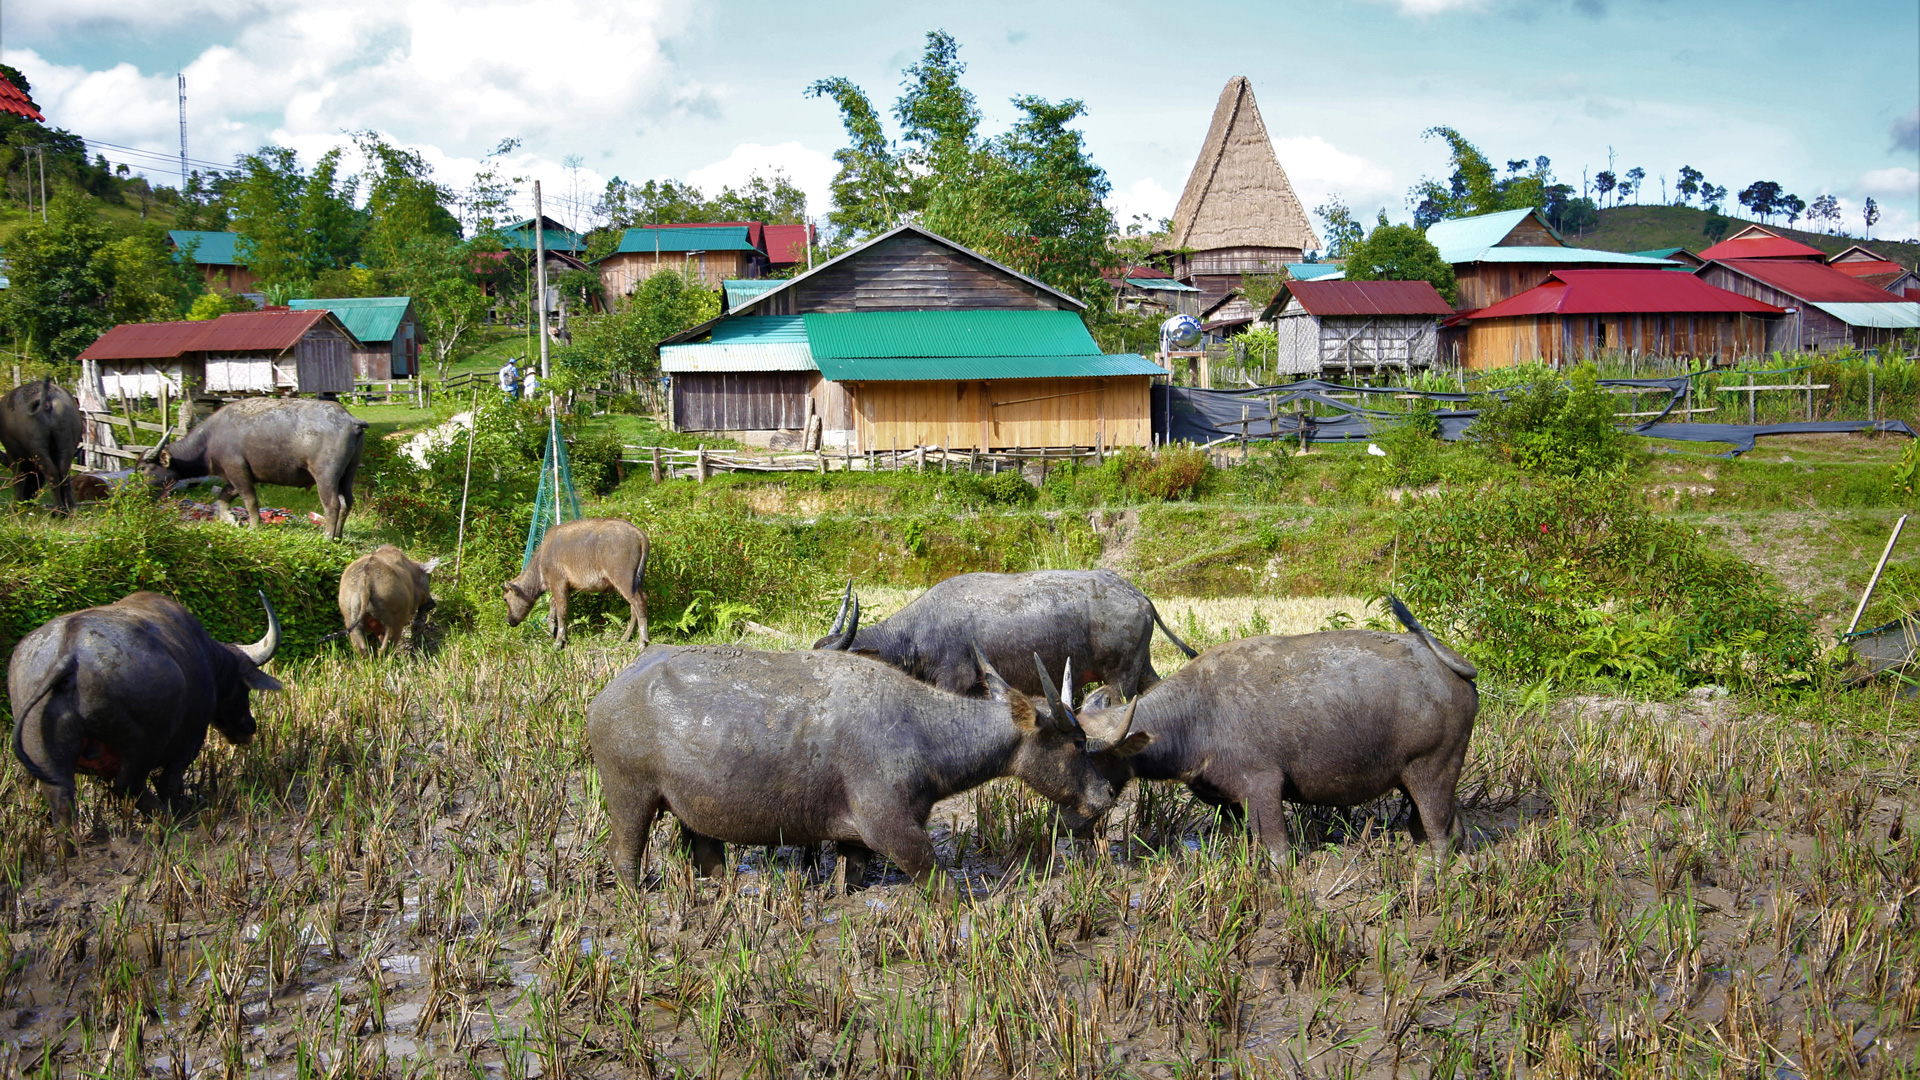 Ngôi làng nhỏ Vi Rơ Ngheo lọt thỏm giữa núi rừng hoang sơ và tách biệt 
với những ngôi làng khác